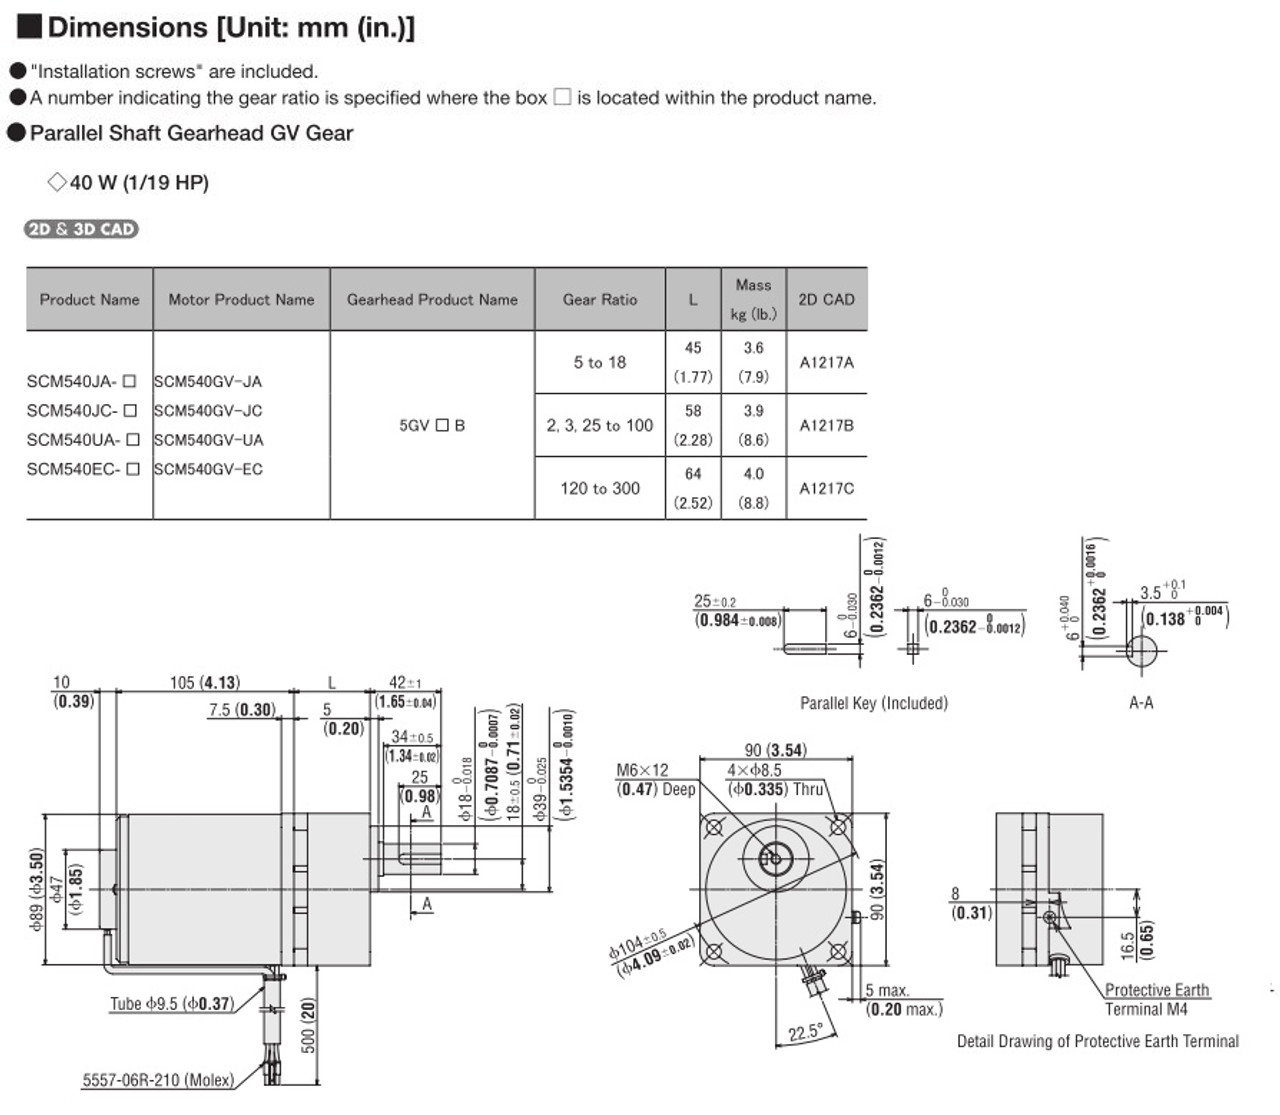 SCM540UA-25 - Dimensions